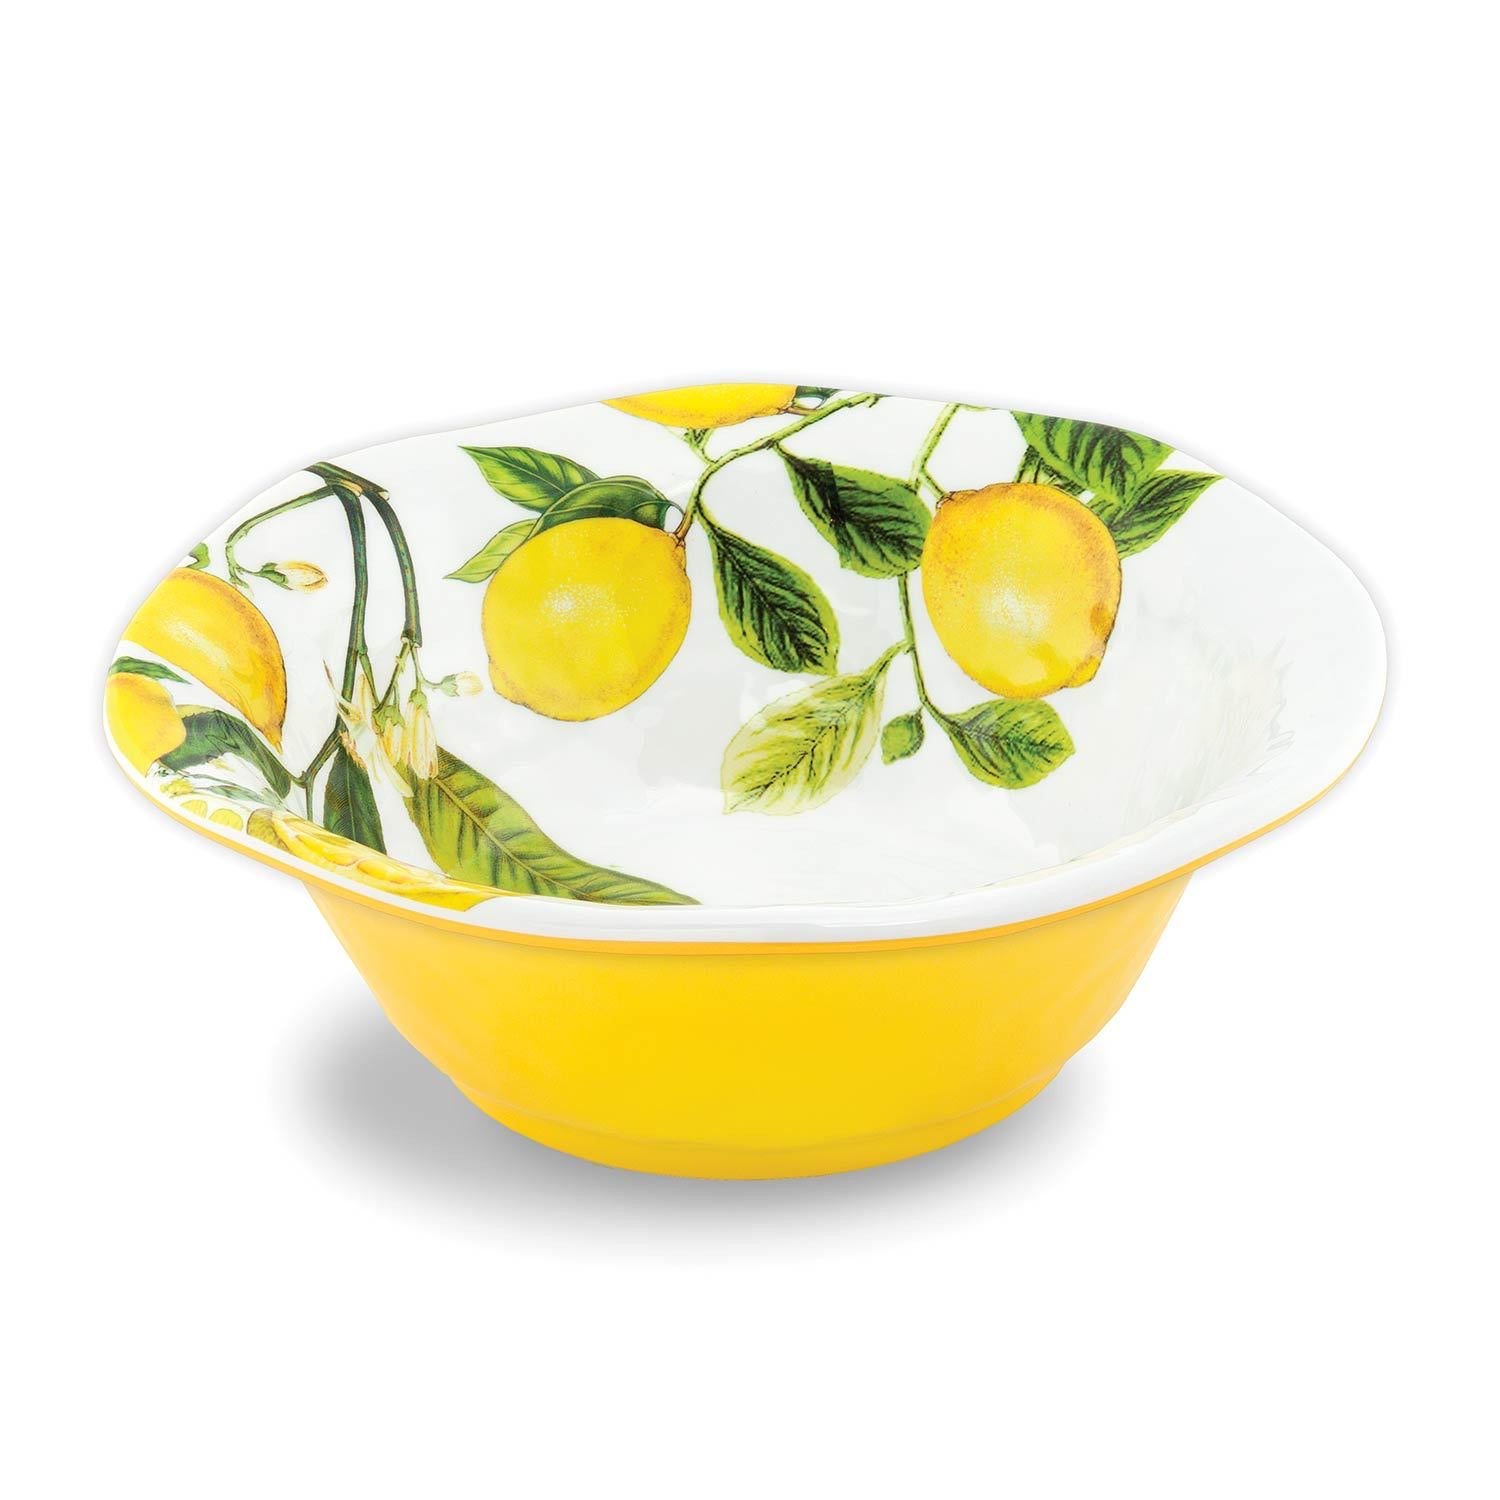 Lemon Basil Medium Bowl    